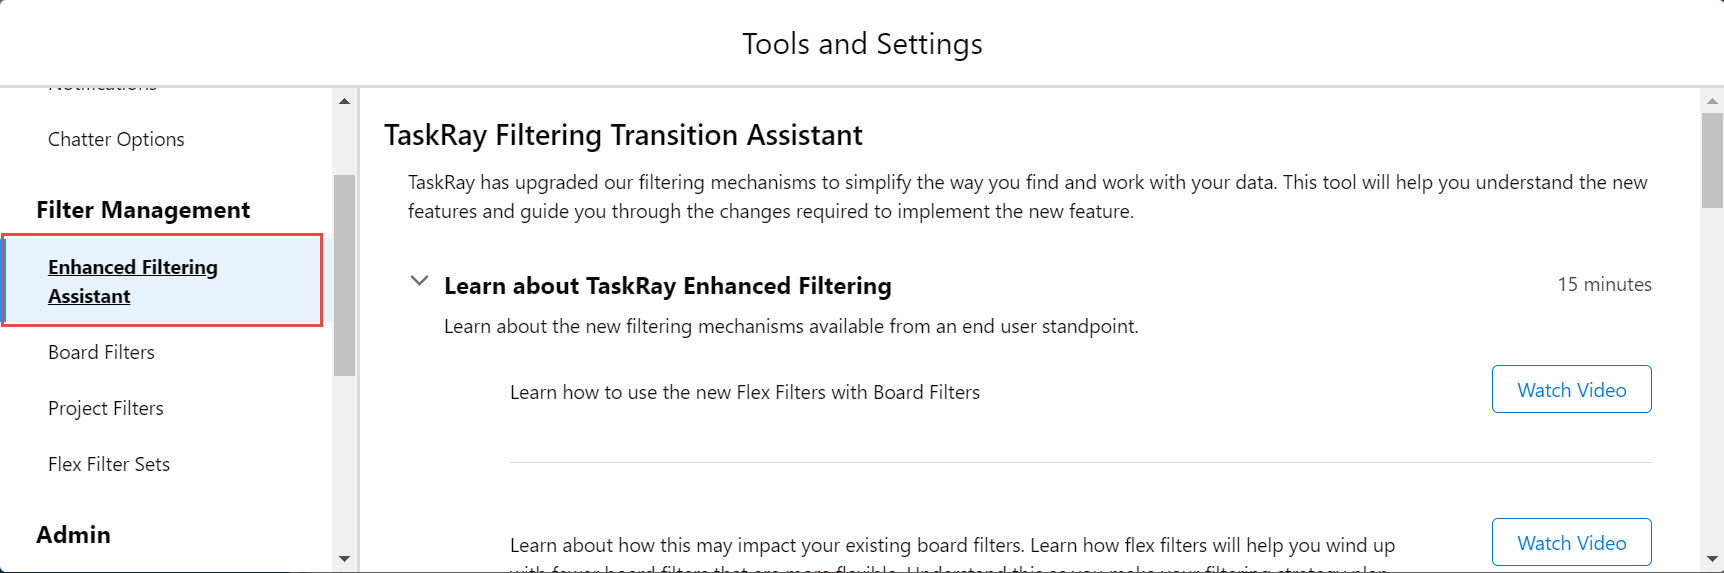 Enhanced_Filtering_Assistent.jpg